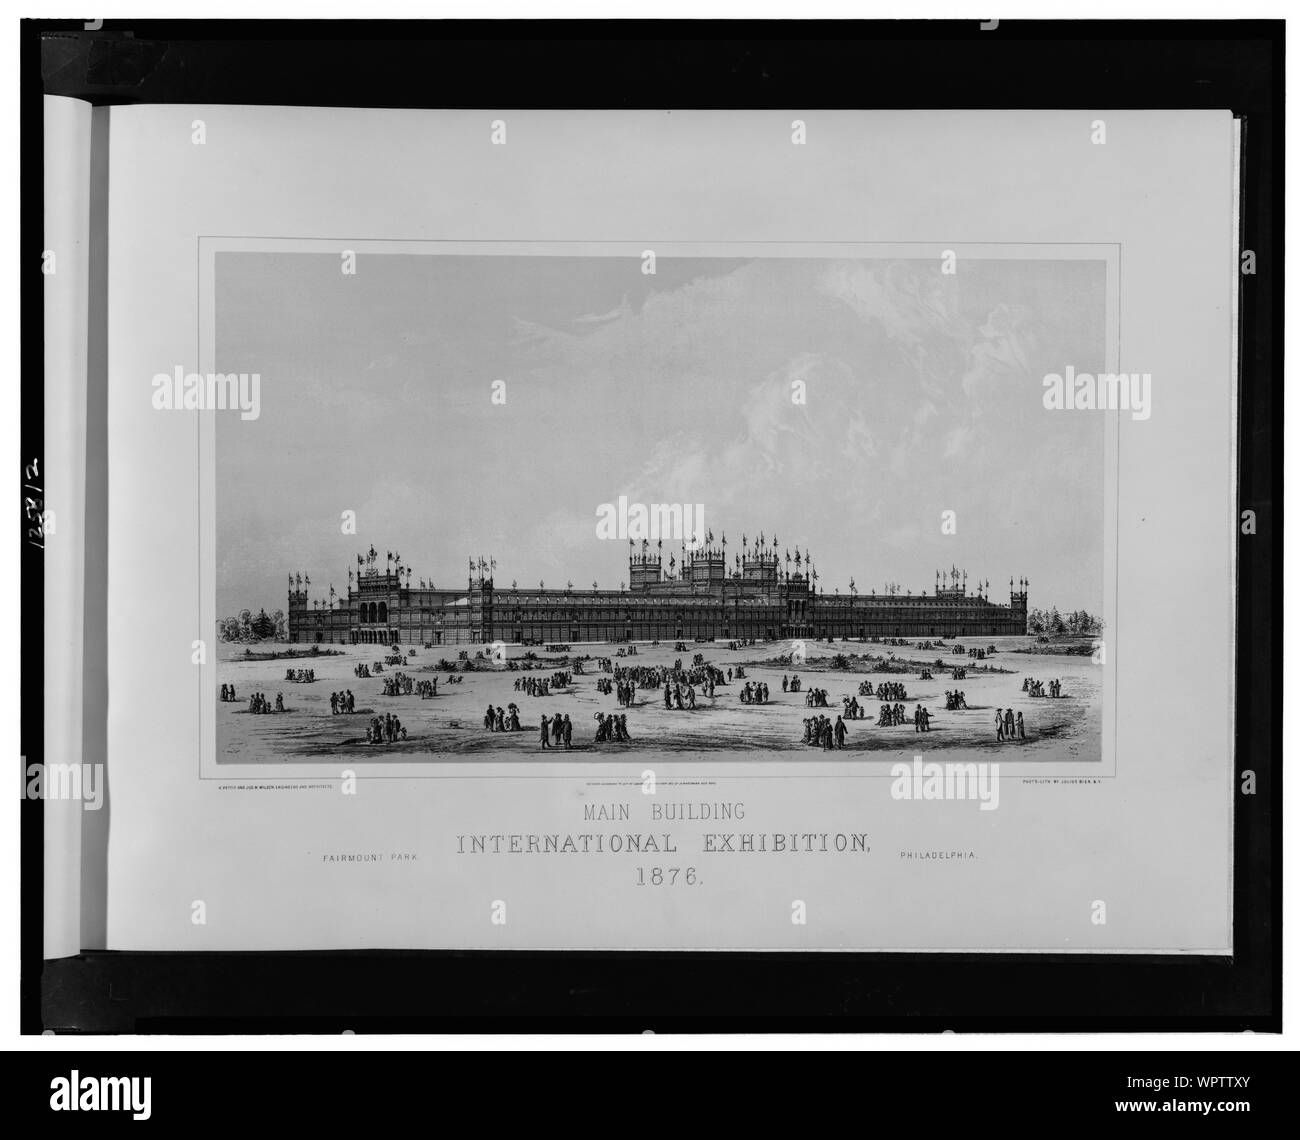 Edificio principale, mostra internazionale, 1876--Fairmont Park, Philadelphia / H. Pettit e Jos. M. Wilson, ingegneri e architetti; foto-lith. da Julius Bien, N.Y. Foto Stock